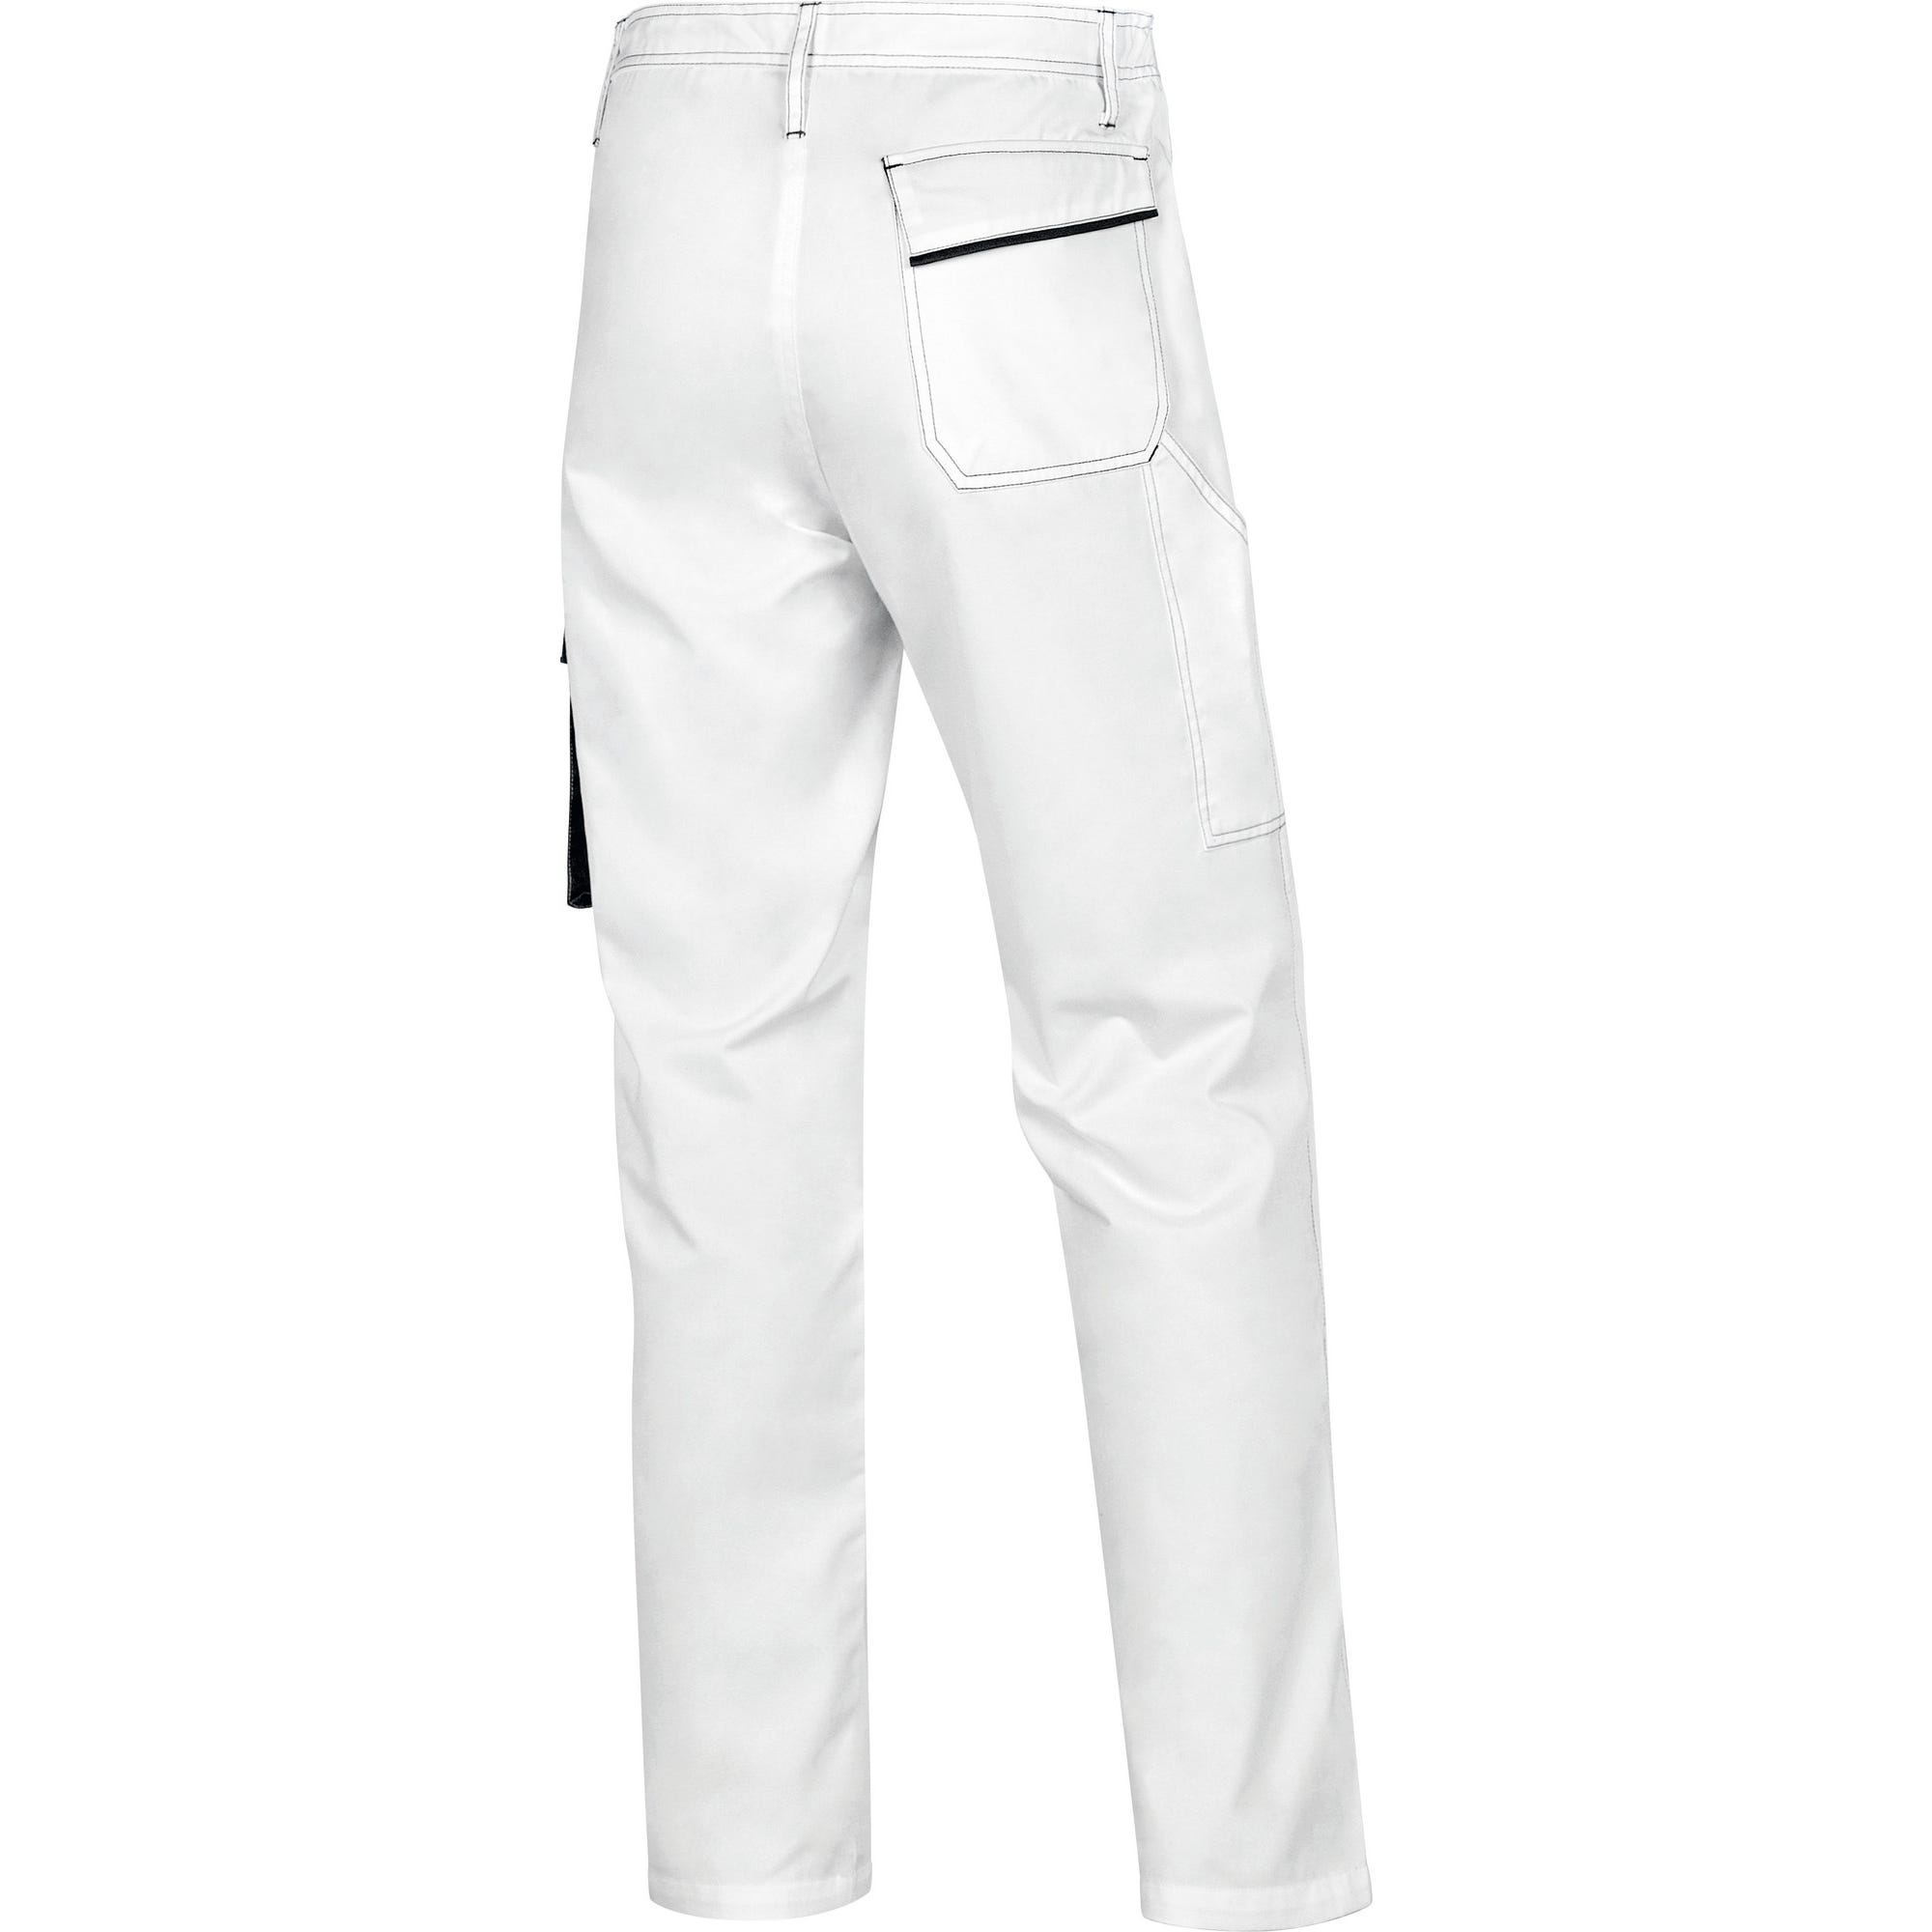 Pantalon de travail blanc/gris T.S PANOSTYLE - DELTA PLUS 1